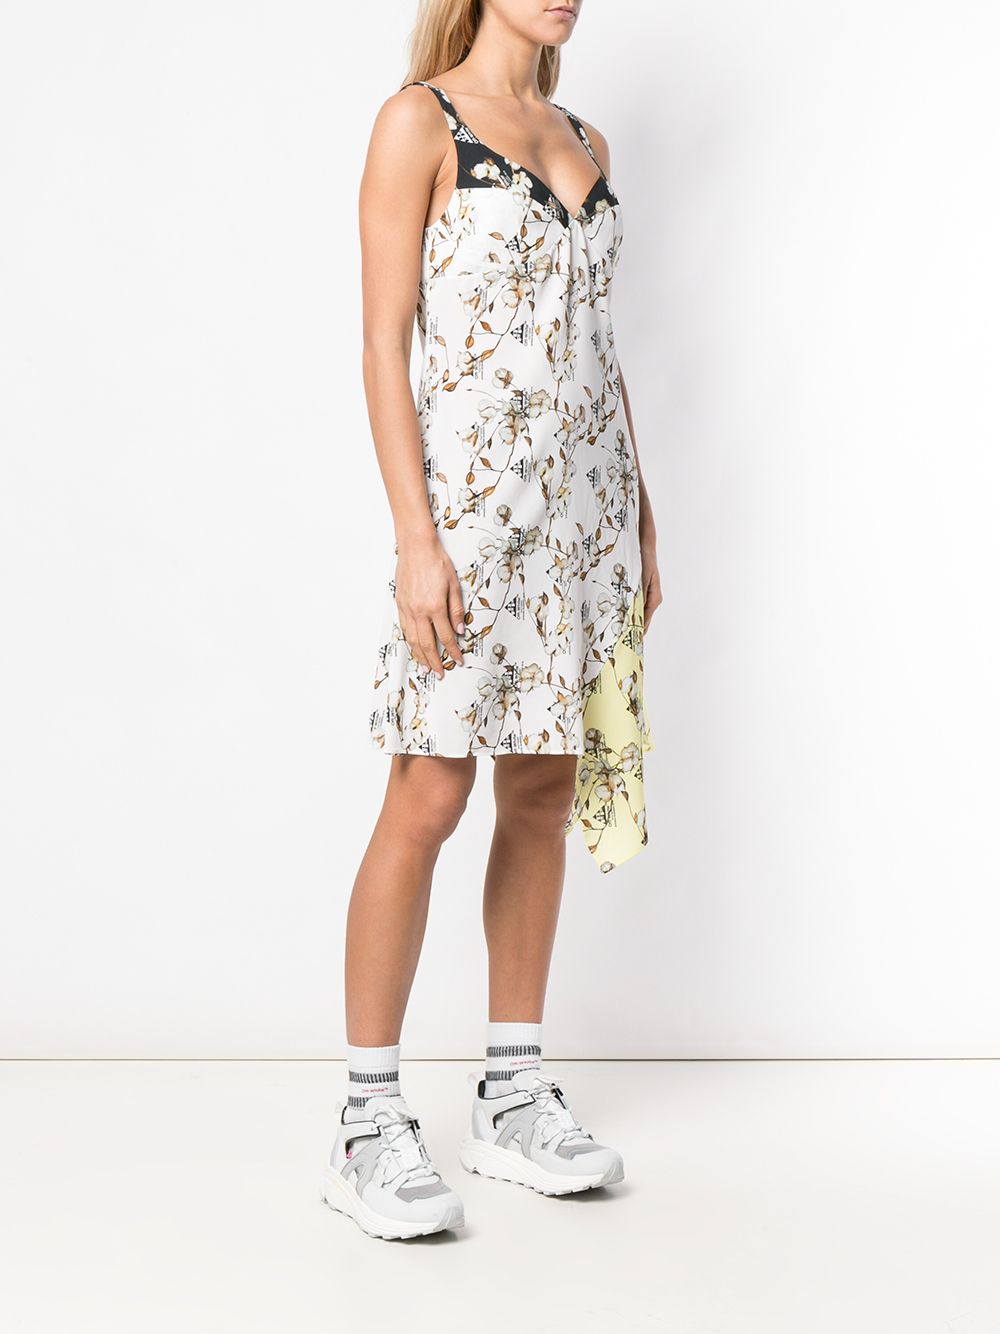 фото Off-White платье асимметричного кроя с принтом цветов хлопка